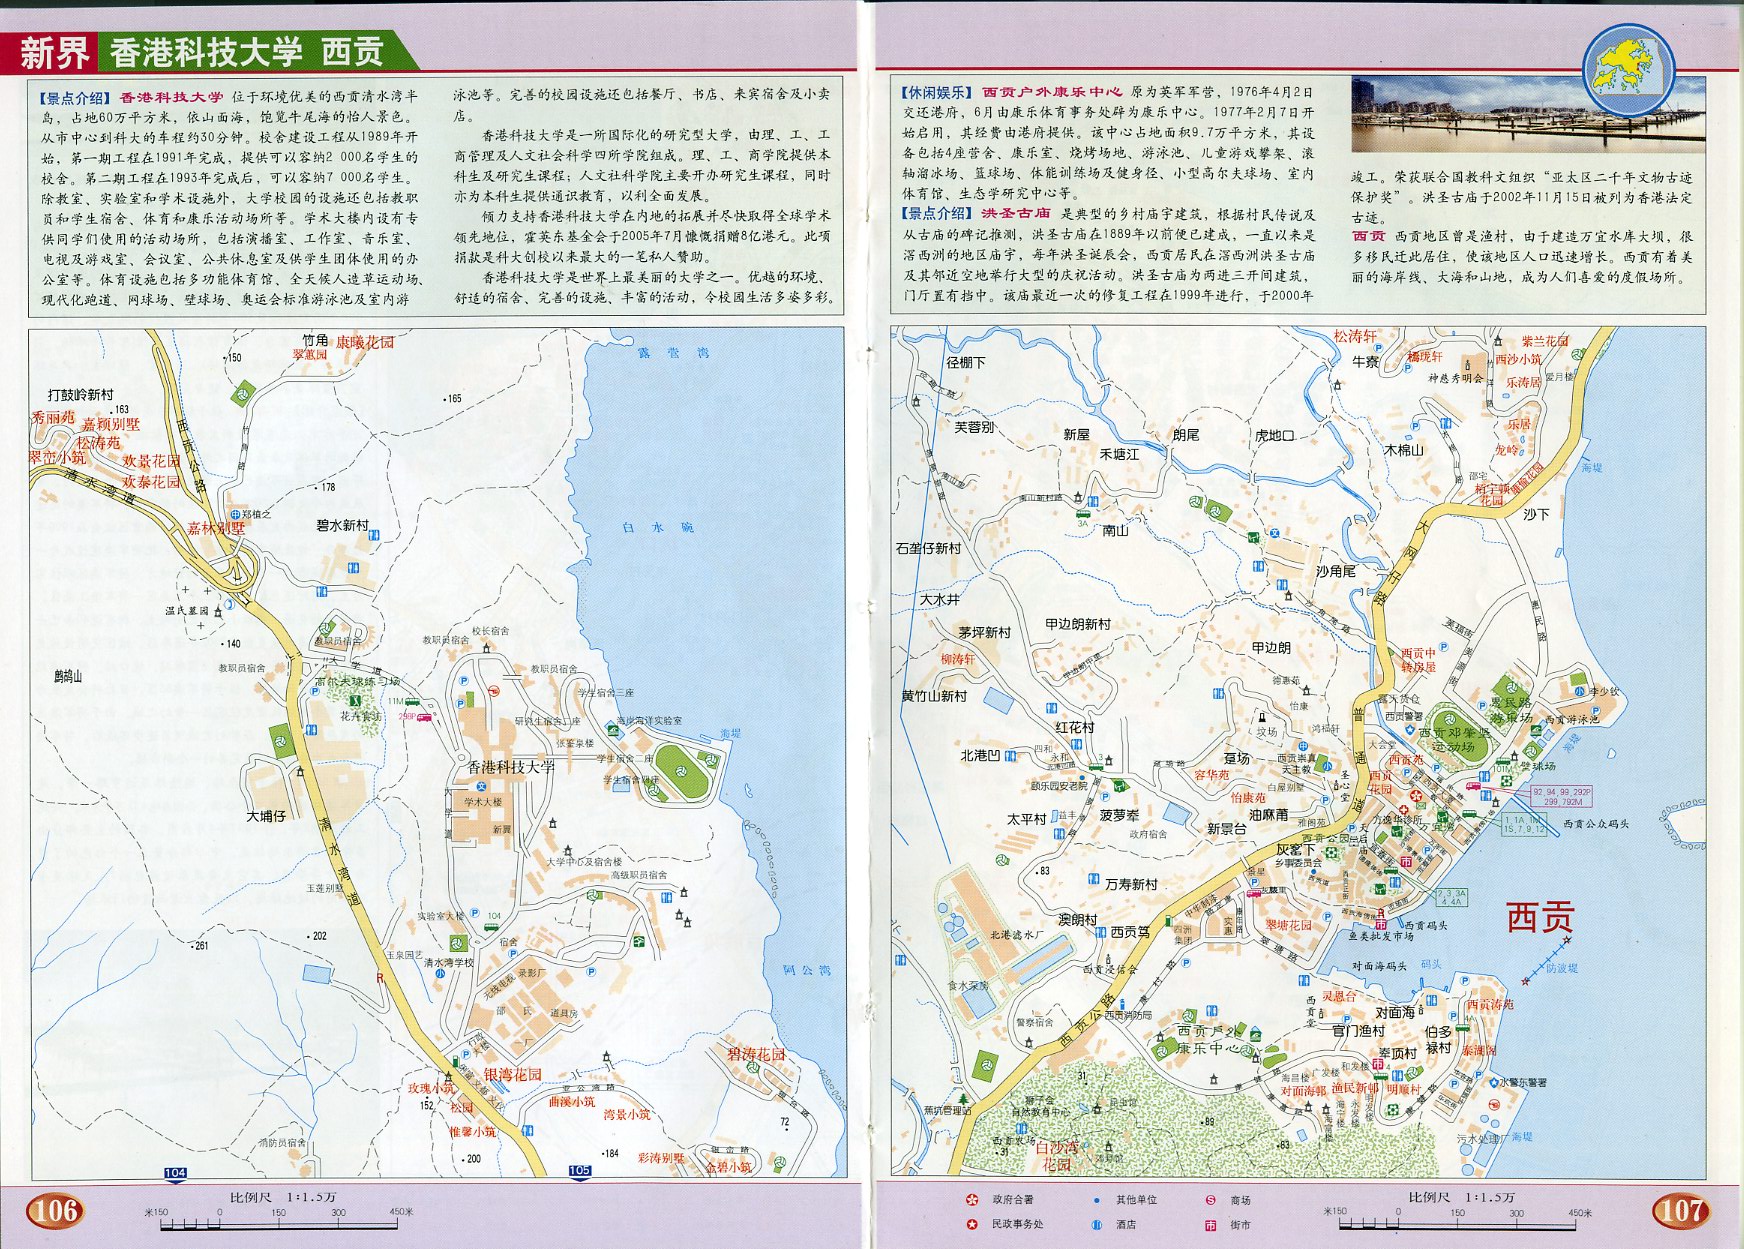 新界 香港科技大学地图高清版图片